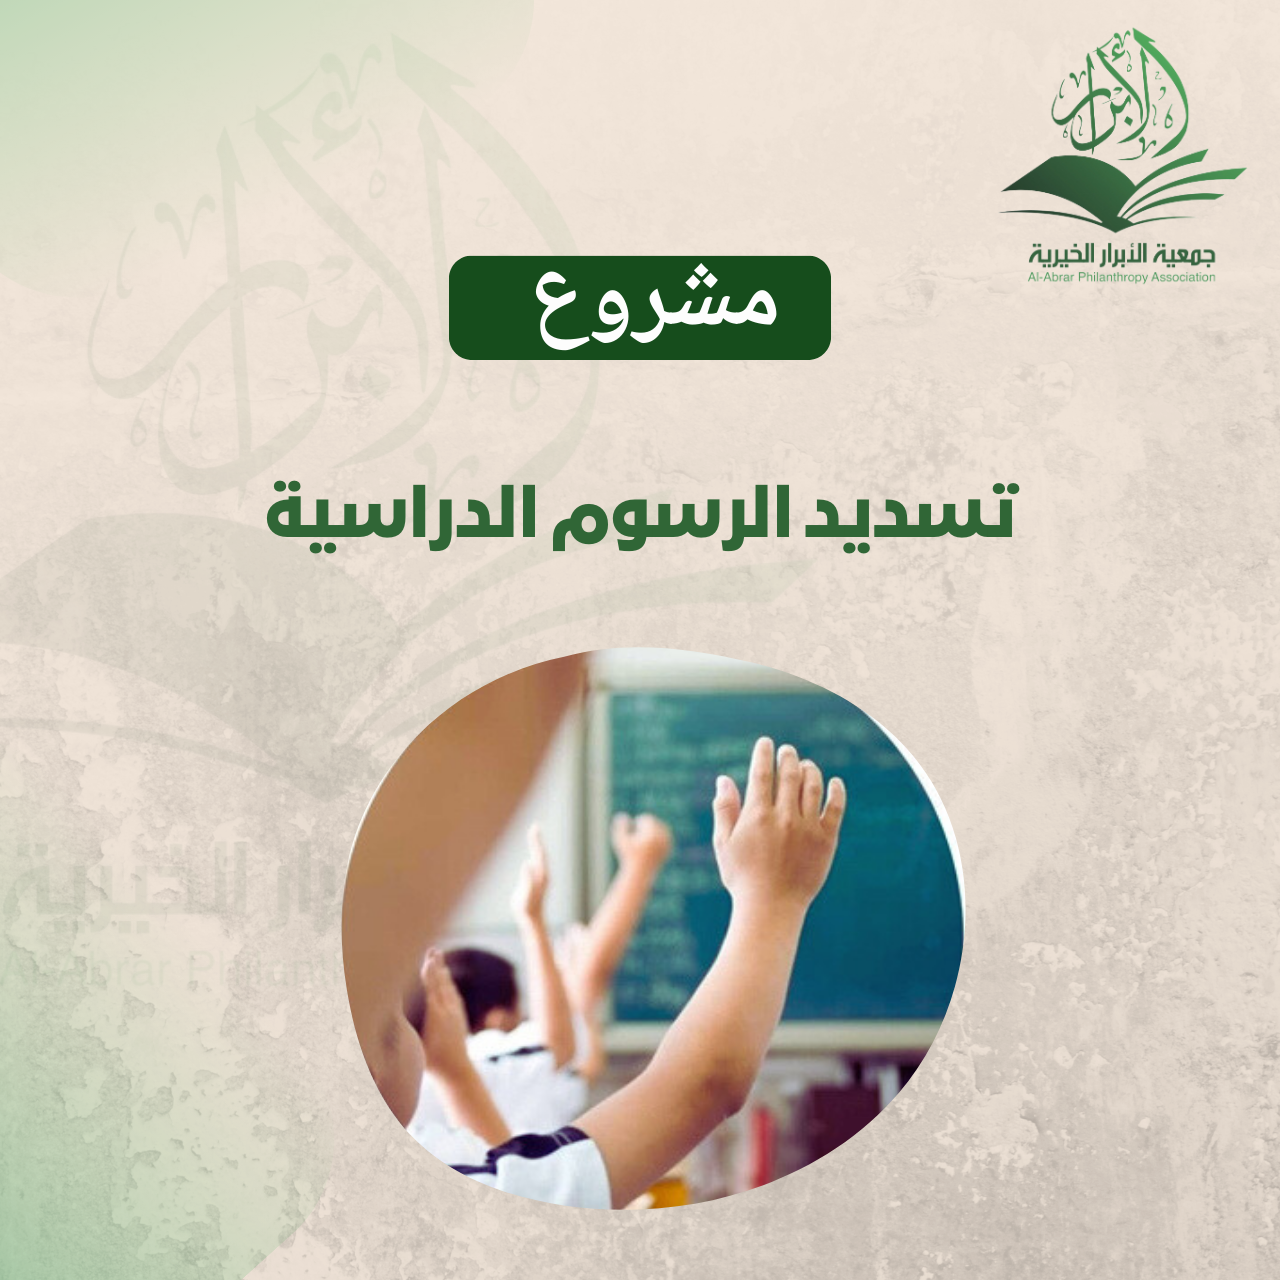 مشروع دعم طلبة المدارس - الرسوم الدراسية في الكويت